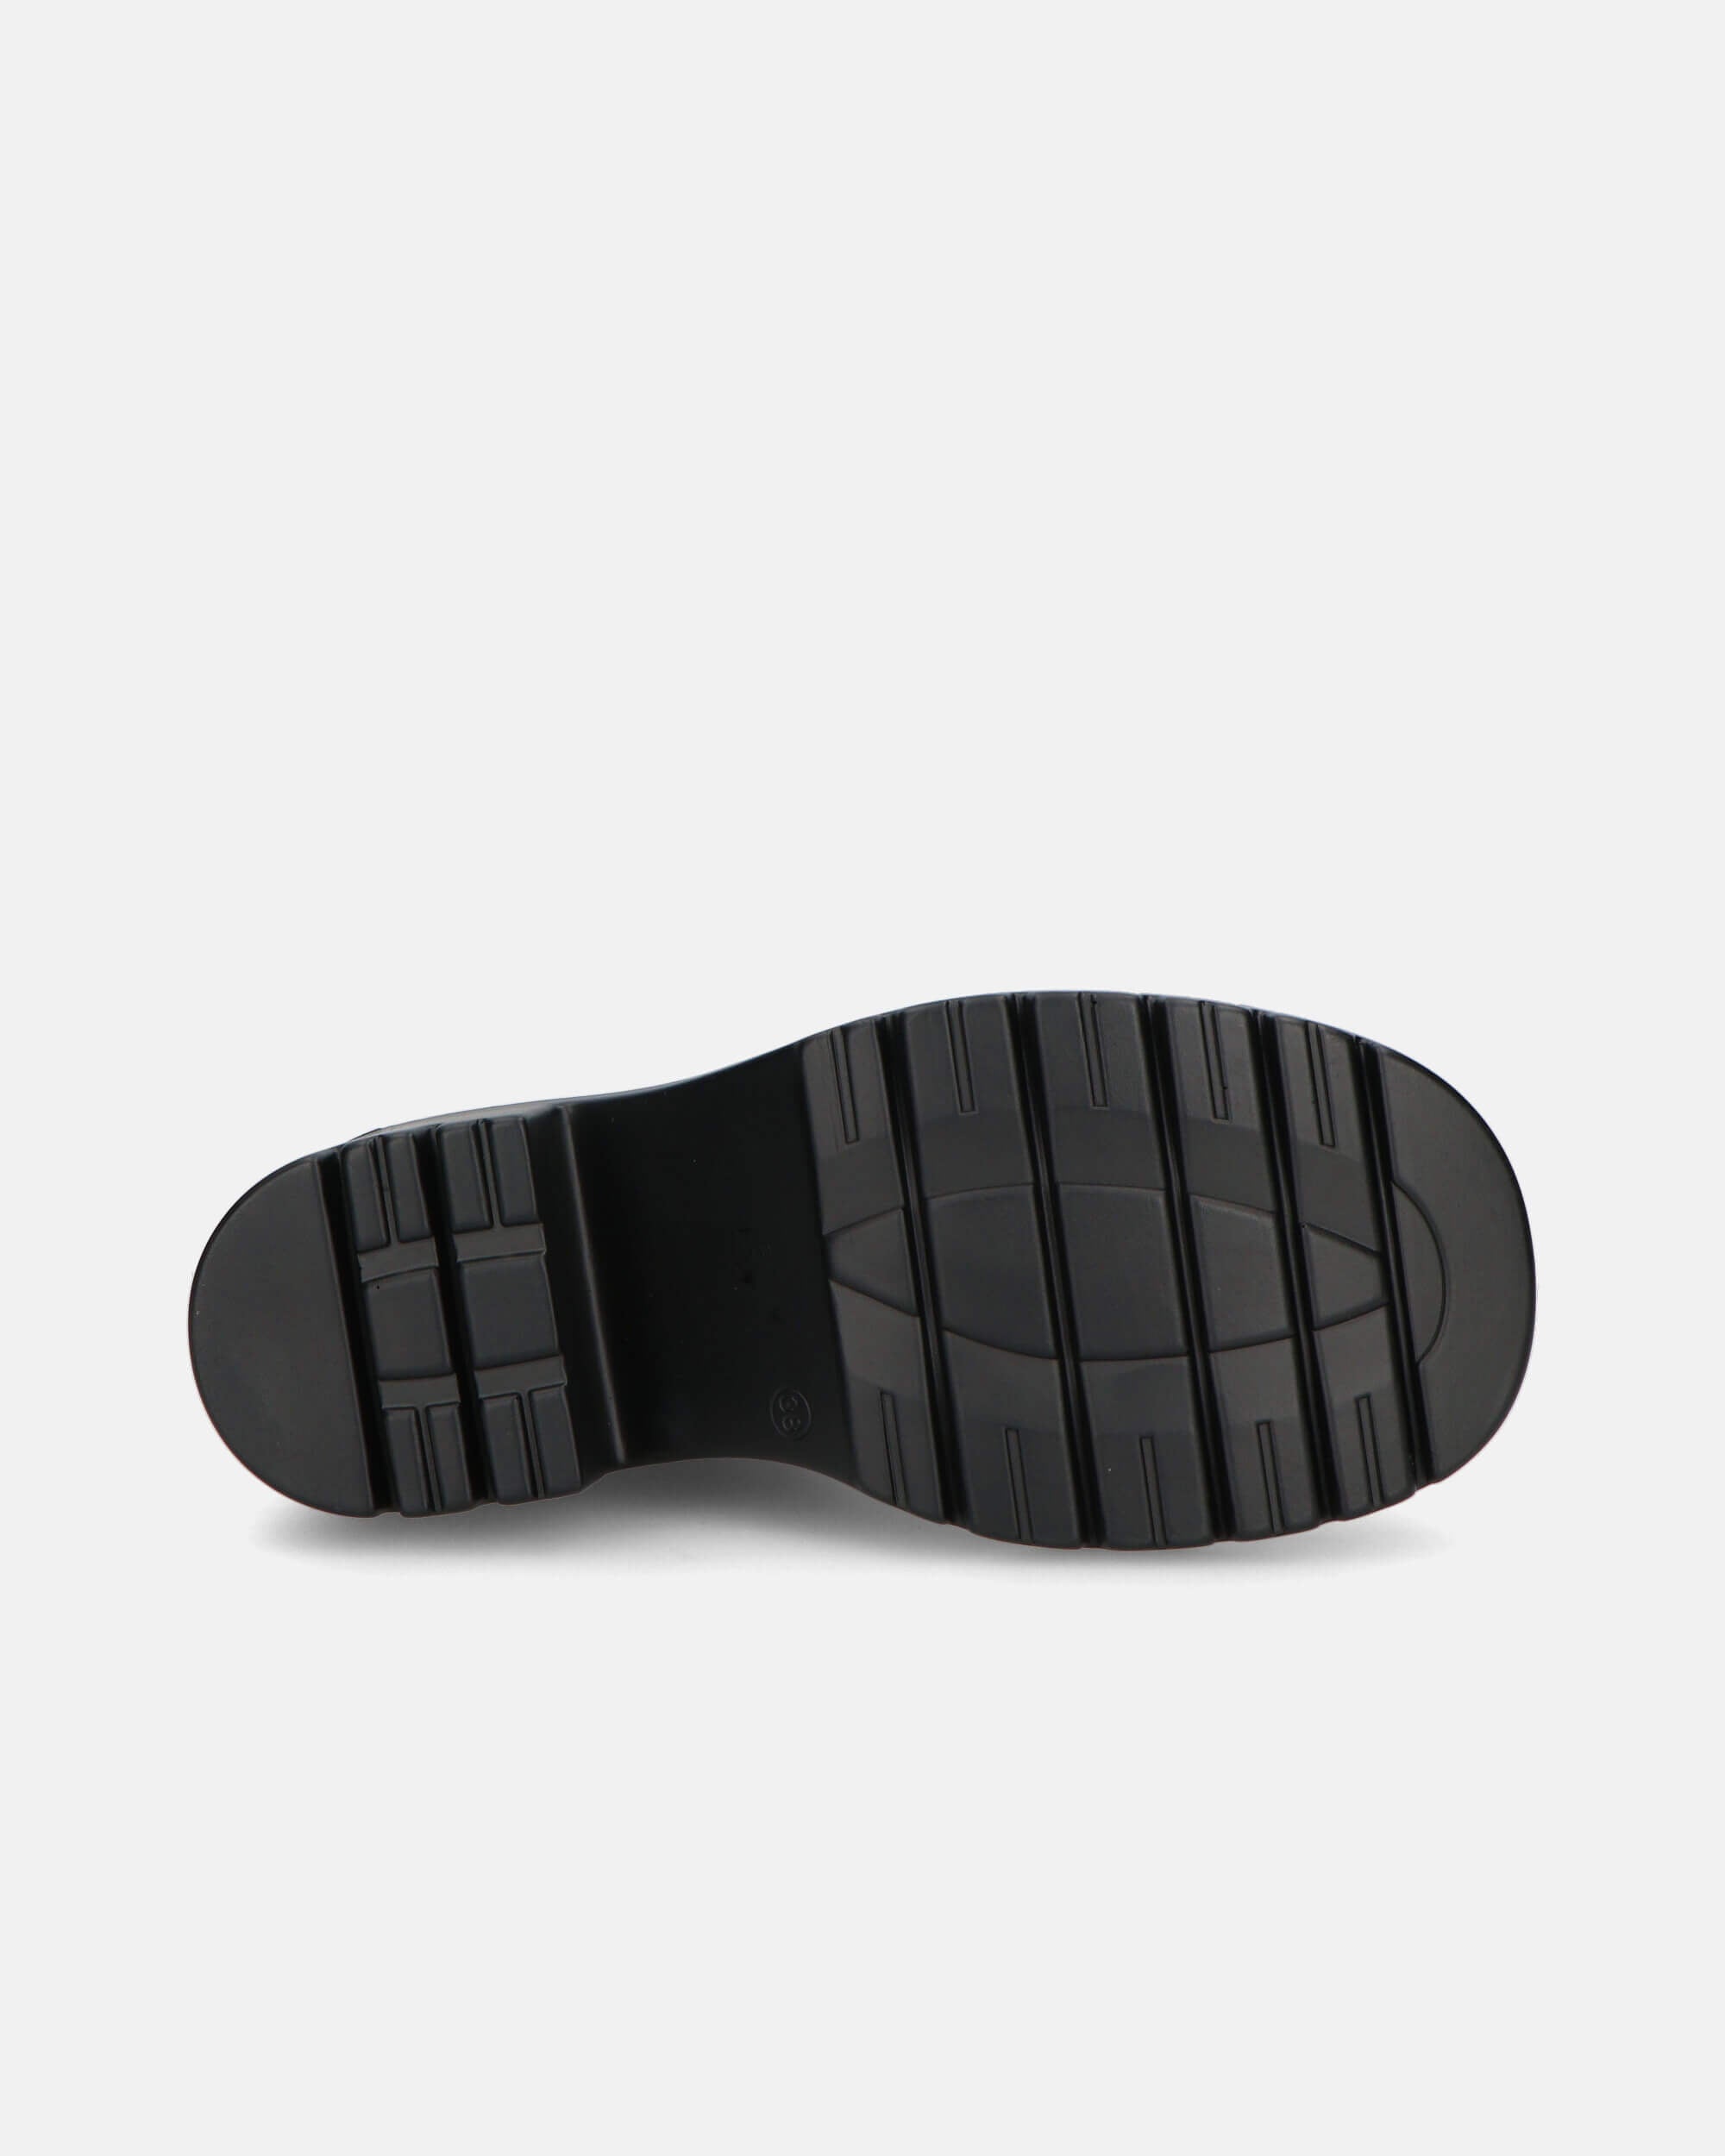 PRISCA - bottines noires avec élastique et zip latéral